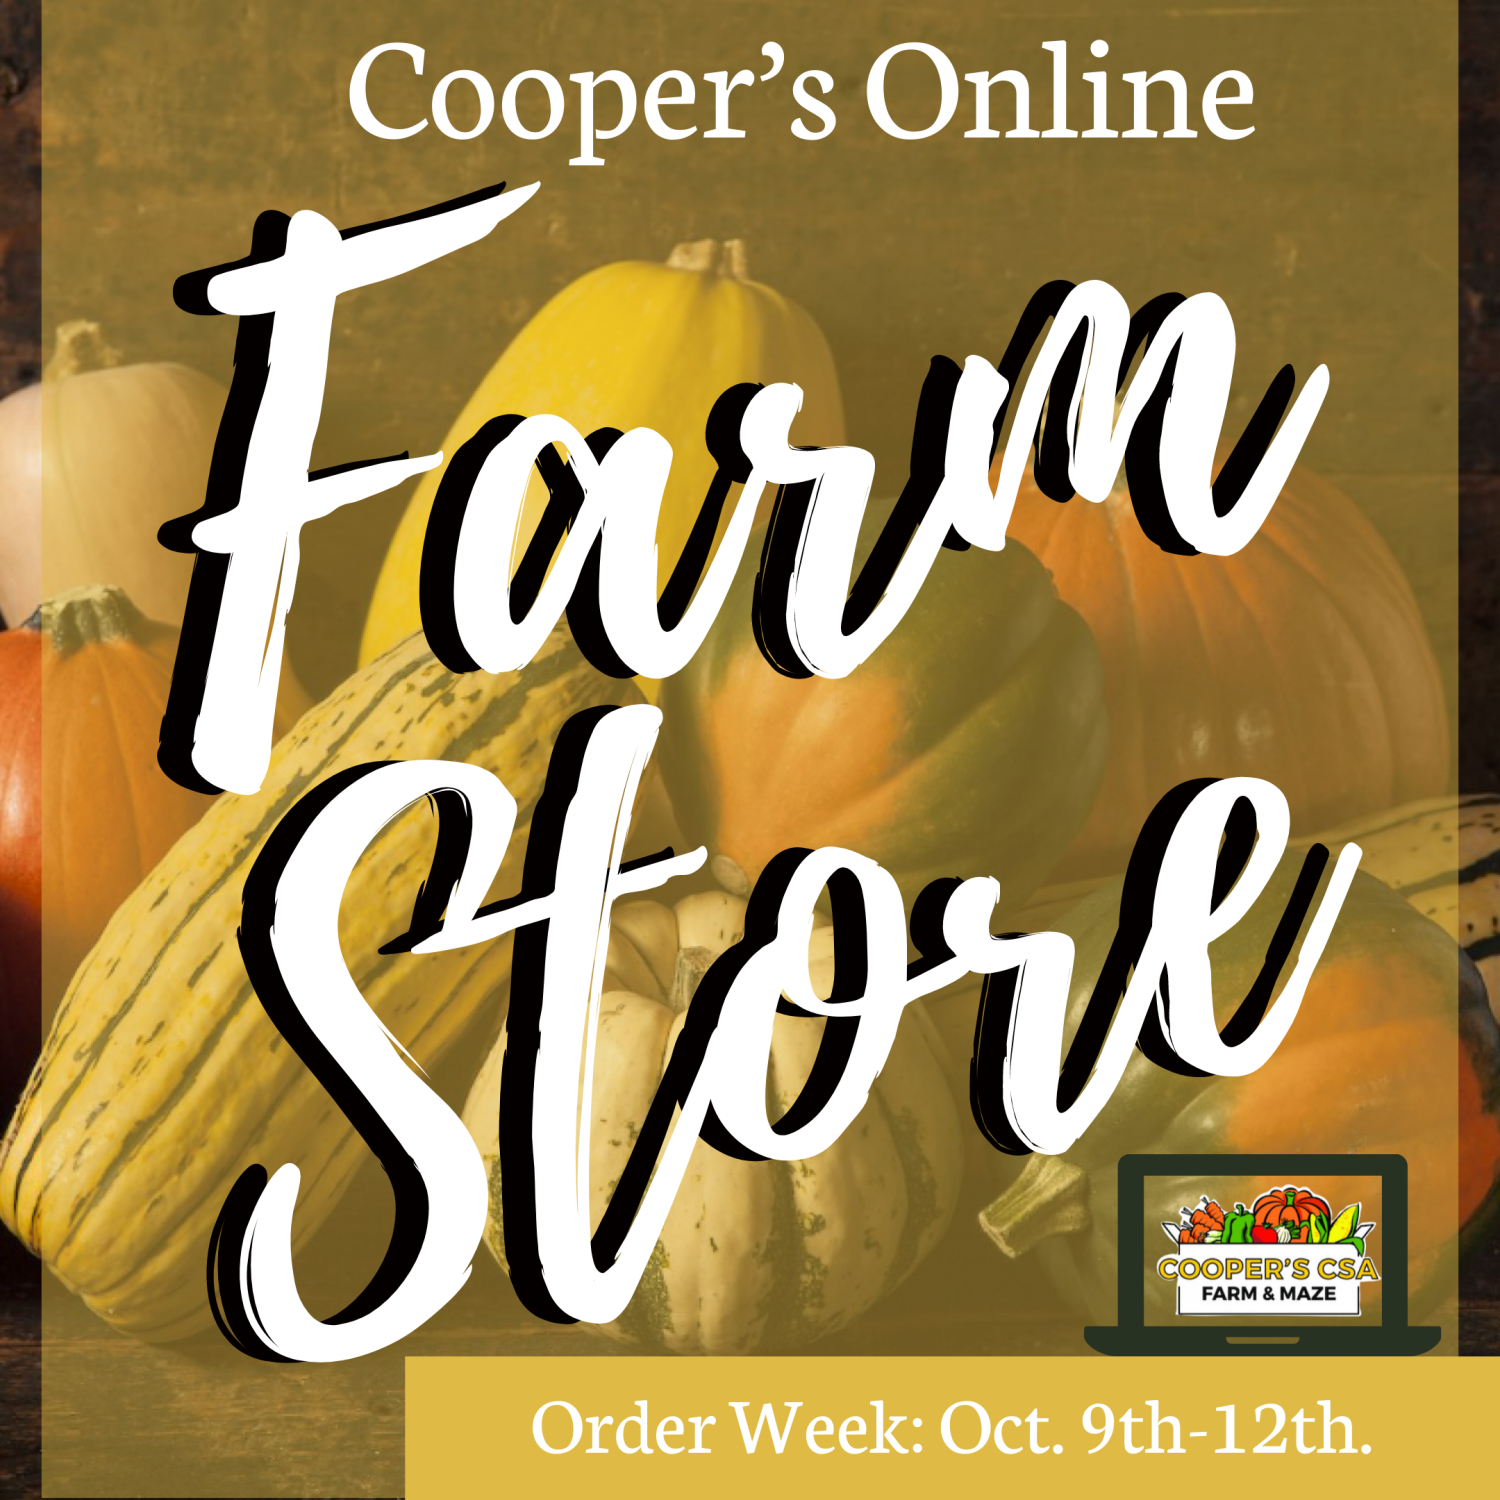 Next Happening: Coopers CSA Online FarmStore- Order Week 19